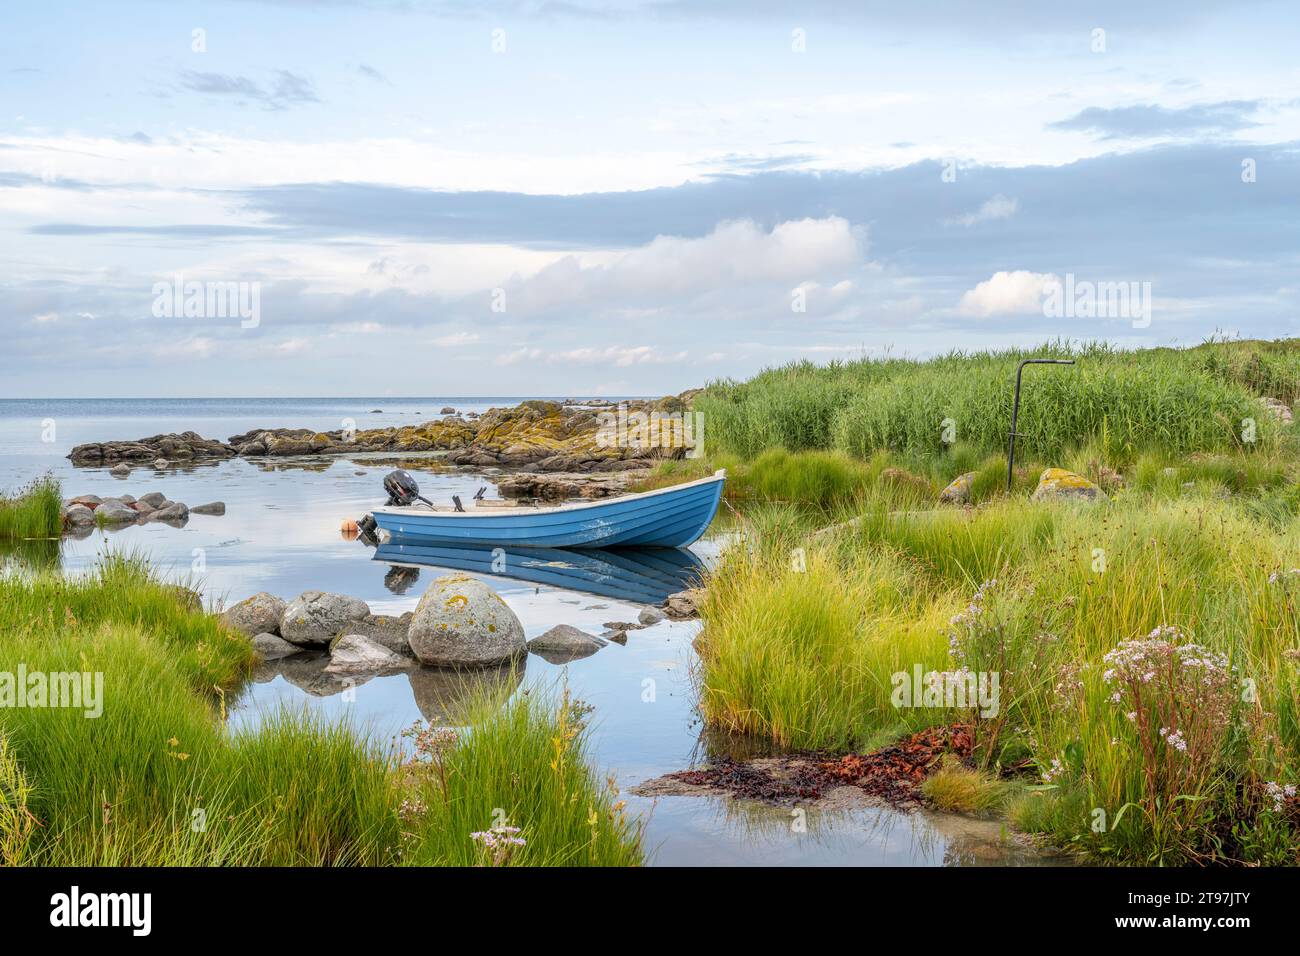 Danimarca, Bornholm, Svaneke, barca a motore ormeggiata sulla costa erbosa dell'isola Foto Stock